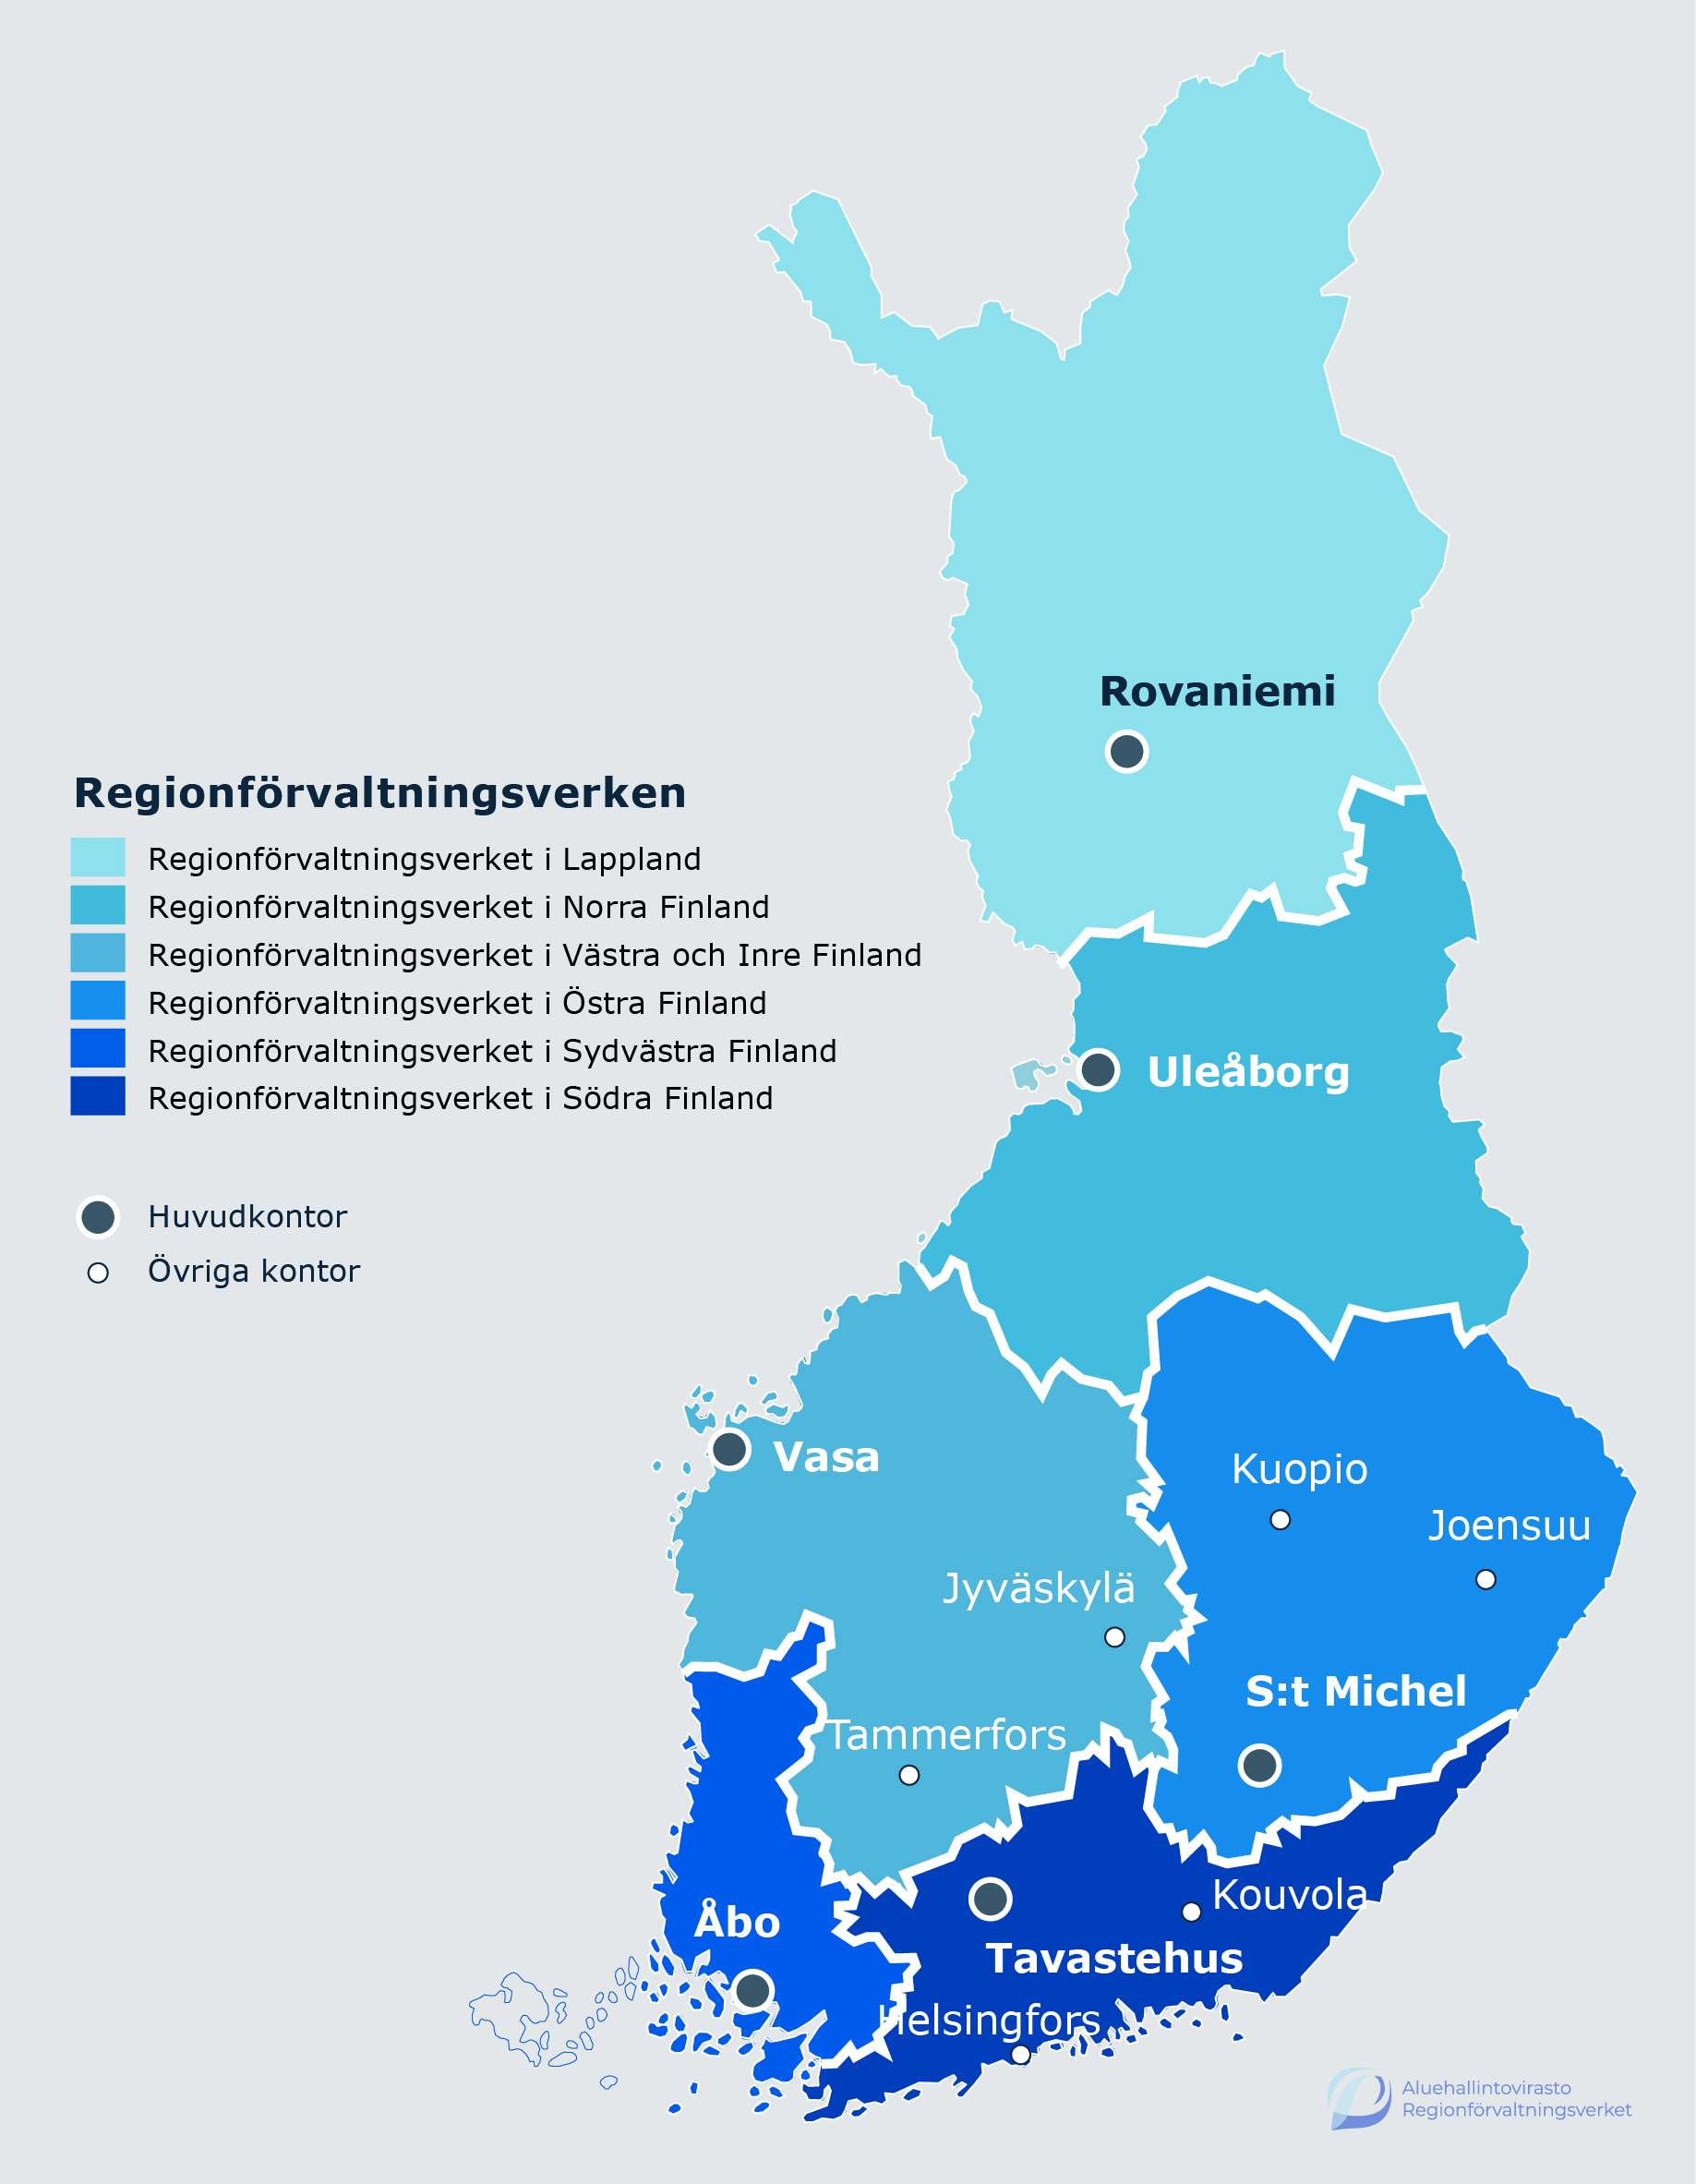 Karta över Finland med regionförvaltningsverkens huvudkontor och verksamhetsställen i Fastlandsfinland. Regionförvaltningsverket i Lappland har sitt huvudkontor i Rovaniemi. Regionförvaltningsverket i Norra Finland har sitt huvudkontor i Uleåborg. Regionförvaltningsverket i Västra och Inre Finland har sitt huvudkontor i Vasa och de övriga verksamhetsställena finns i Jyväskylä och Tammerfors. Regionförvaltningsverket i Östra Finland har sitt huvudkontor i S:t Michel och de övriga verksamhetsställena finns i Kuopio och Joensuu. Regionförvaltningsverket i Sydvästra Finland har sitt huvudkontor i Åbo. Regionförvaltningsverket i Södra Finland har sitt huvudkontor i Tavastehus och de övriga verksamhetsställena finns i Helsingfors och Kouvola.